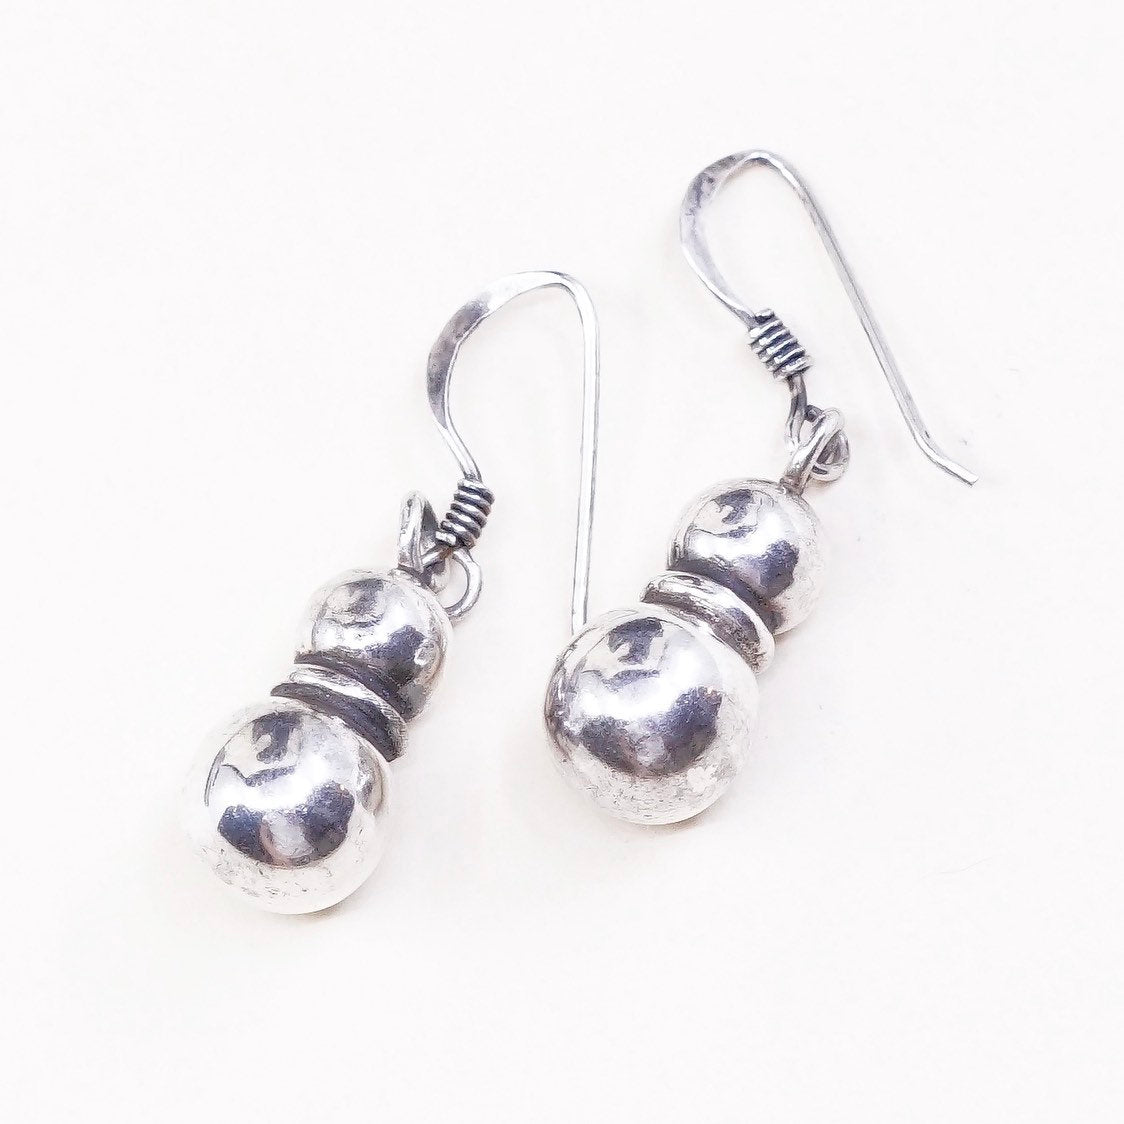 VTG sterling silver handmade earrings, 925 beads dangles, stamped 925